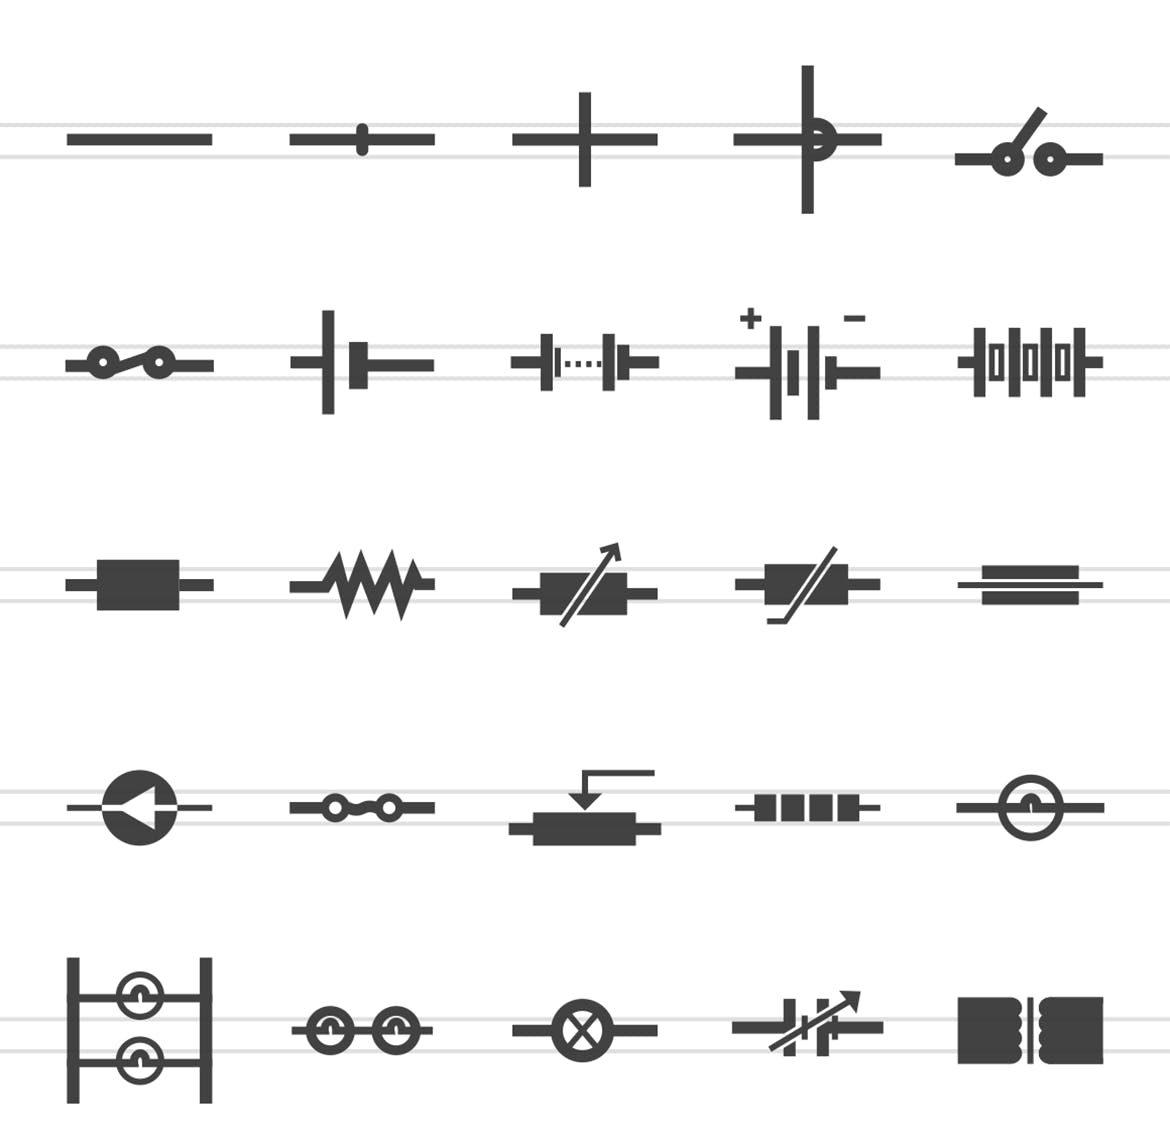 50枚电路线路板主题黑色字体素材天下精选图标 50 Electric Circuits Glyph Icons插图(1)